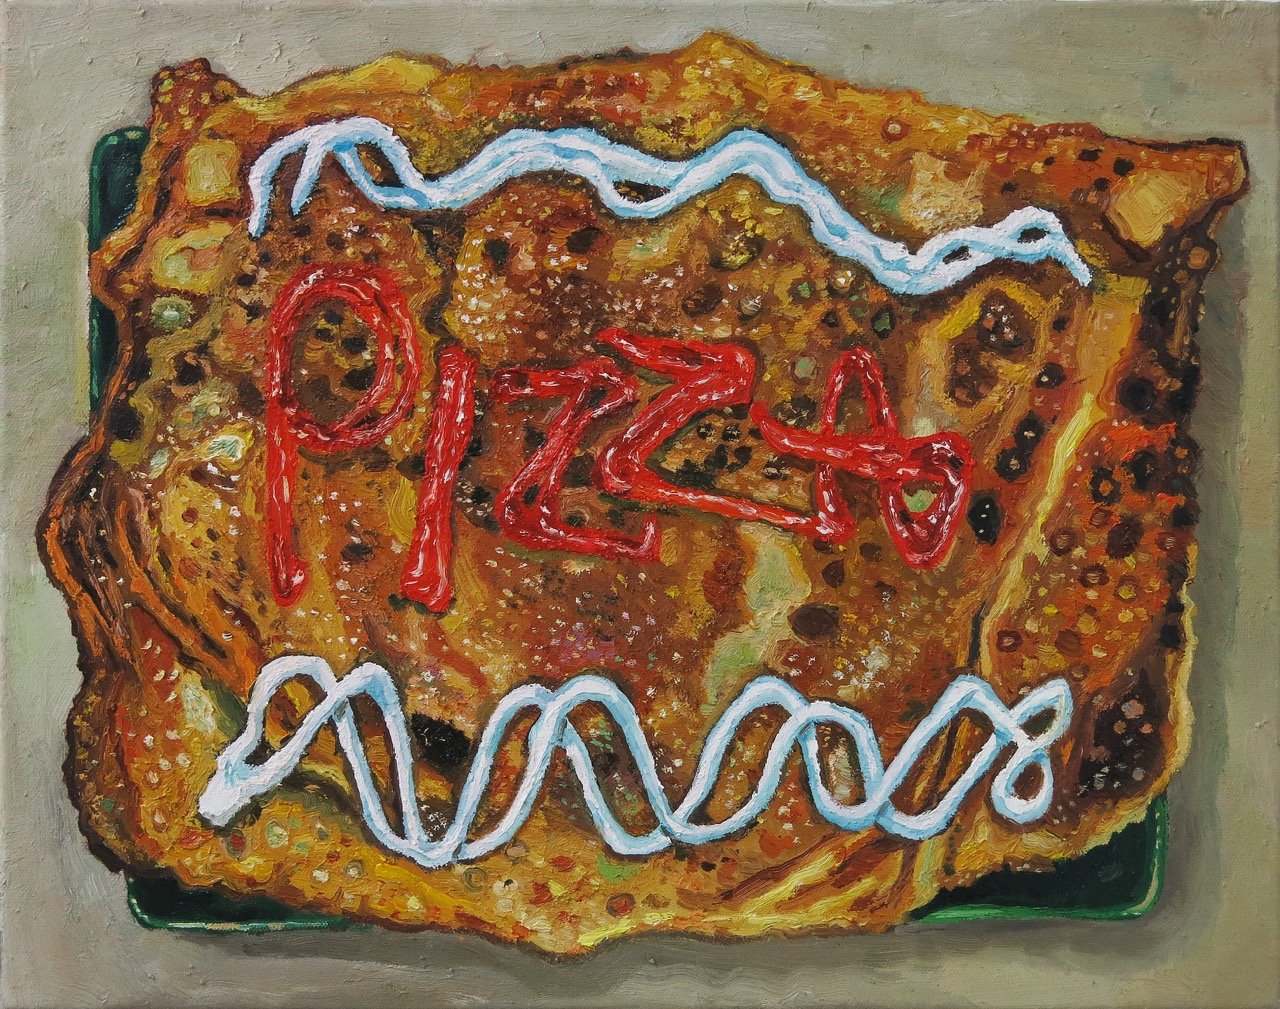   This Is A Pizza   2023  Oil on canvas  H35.5cm x W45.4 x D4 cm 